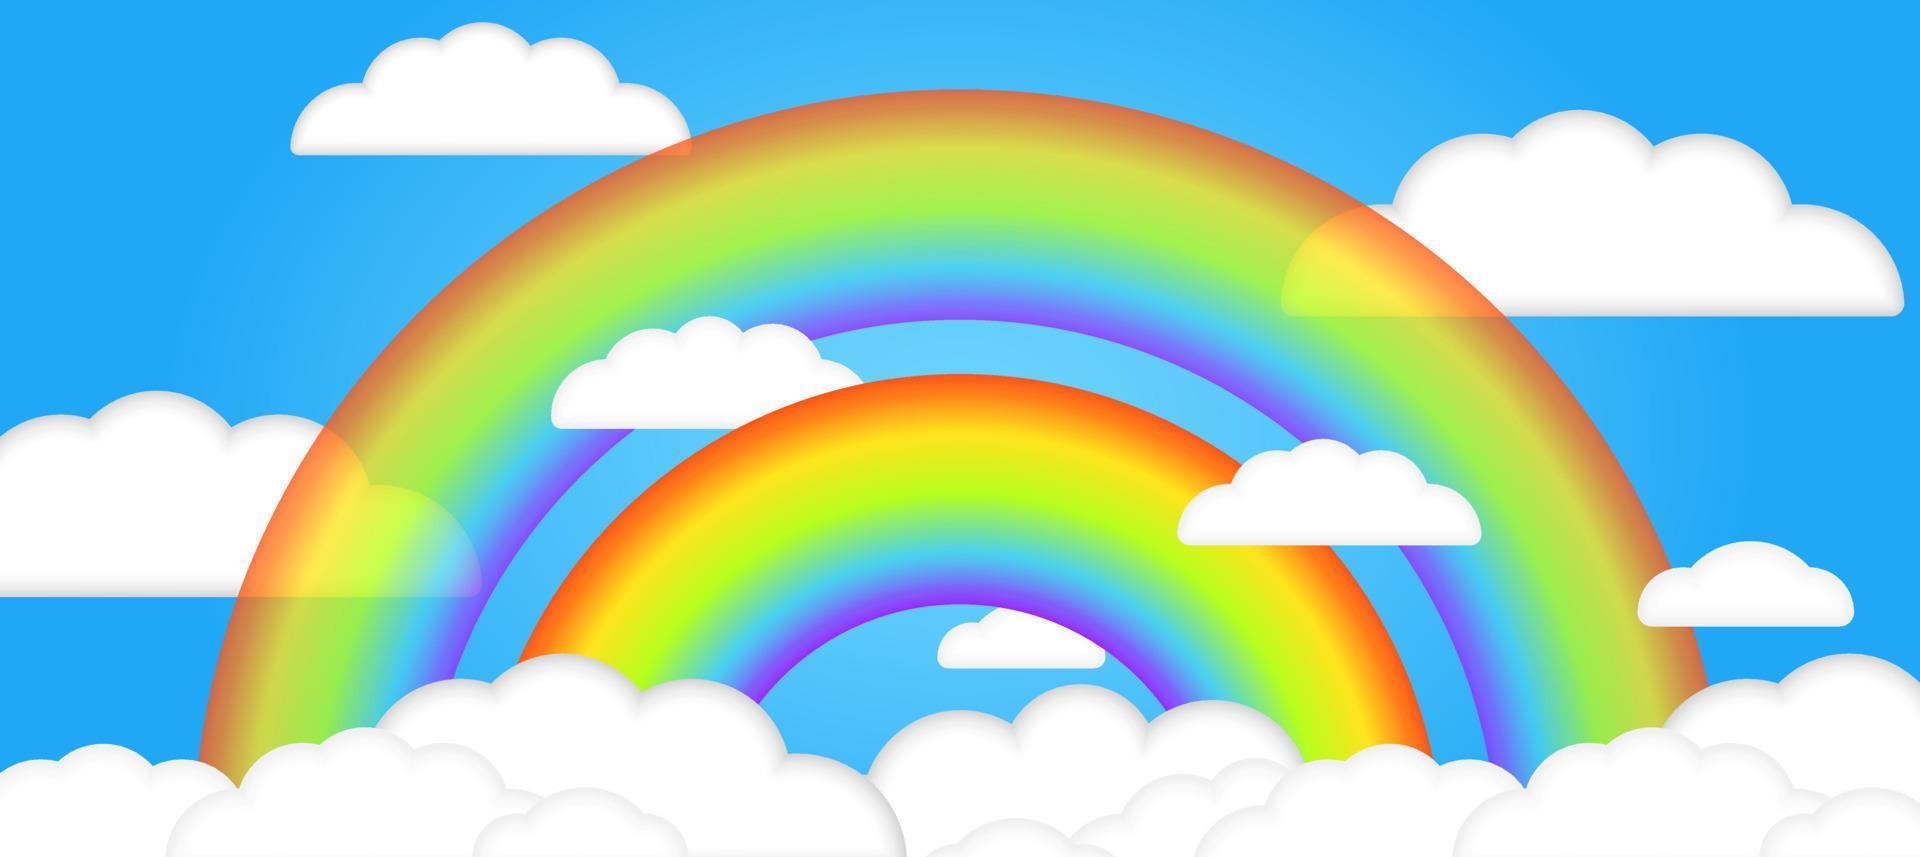 Schöne sommerliche 3D-Wolken im blauen Himmel mit realistischem transparentem 3D-Regenbogen. Kinder-Vektor-Illustration. dreidimensionaler Stil. Platz für Texte. kinderkarikaturillustration für flyer oder banner. vektor